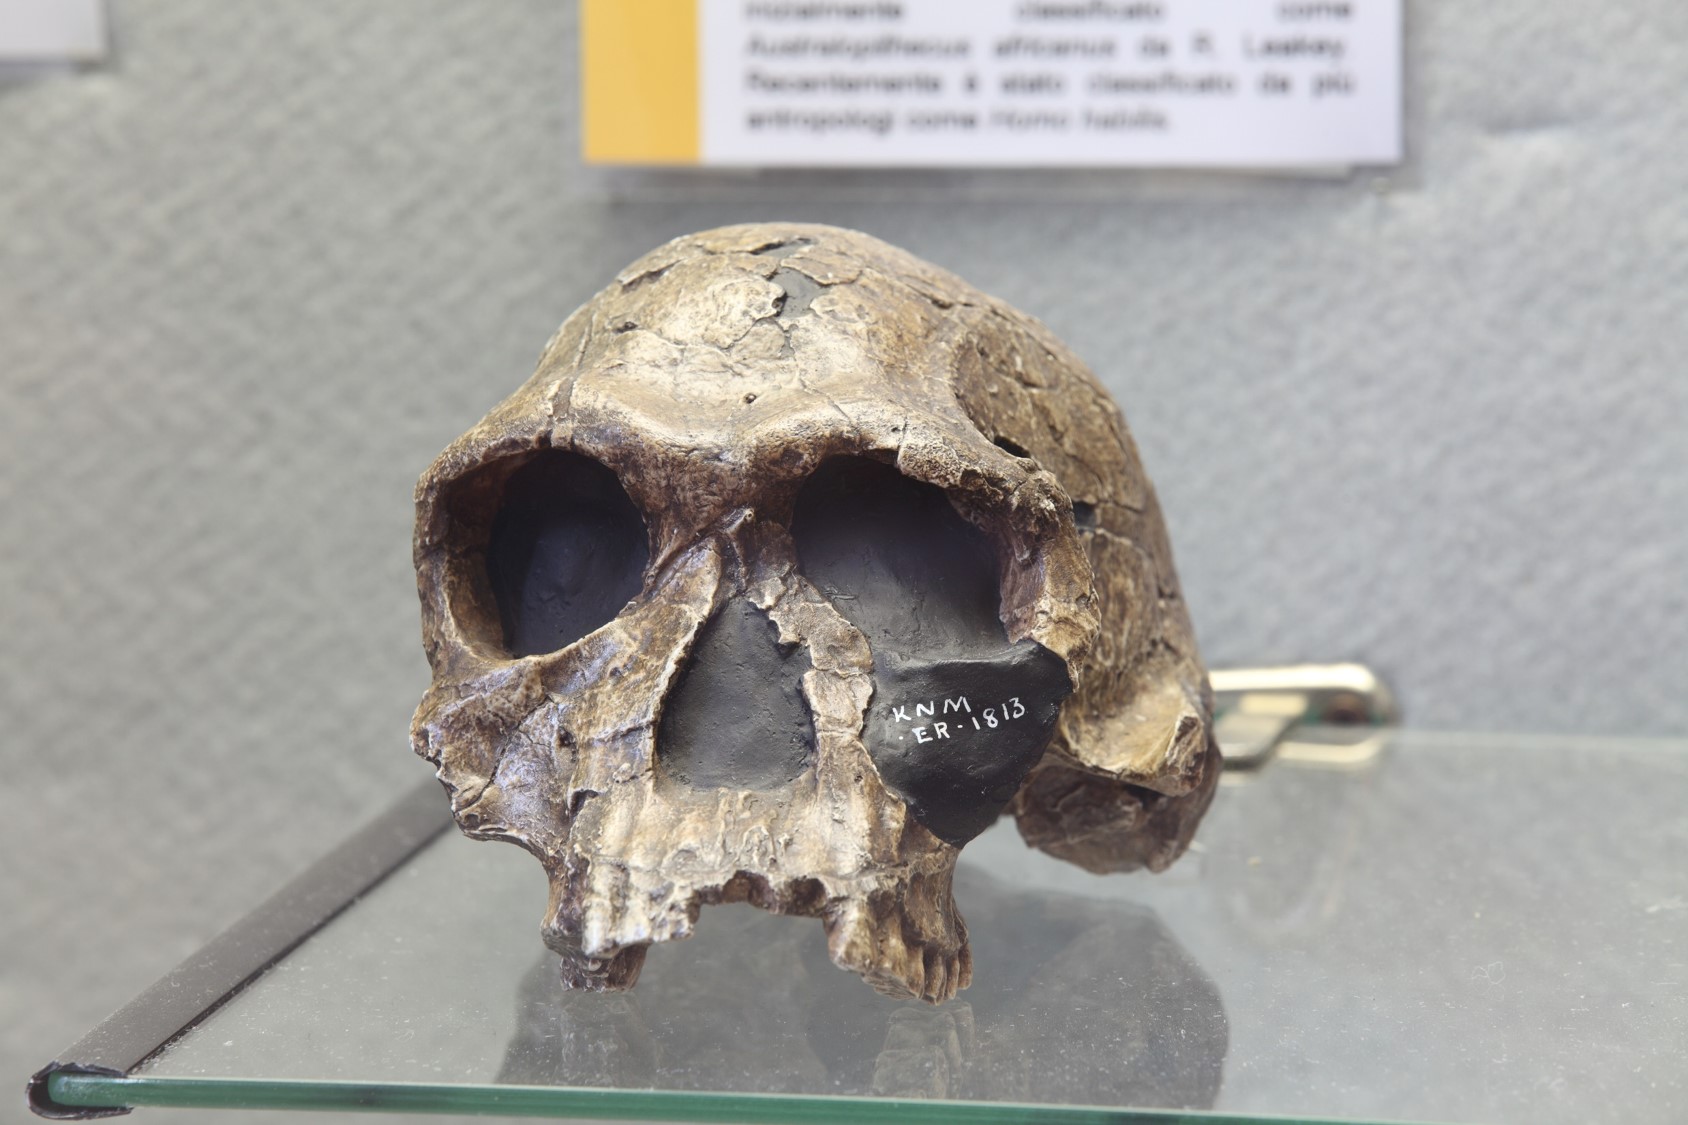 Riproduzione di cranio di Homo habilis ritrovato in Kenia.